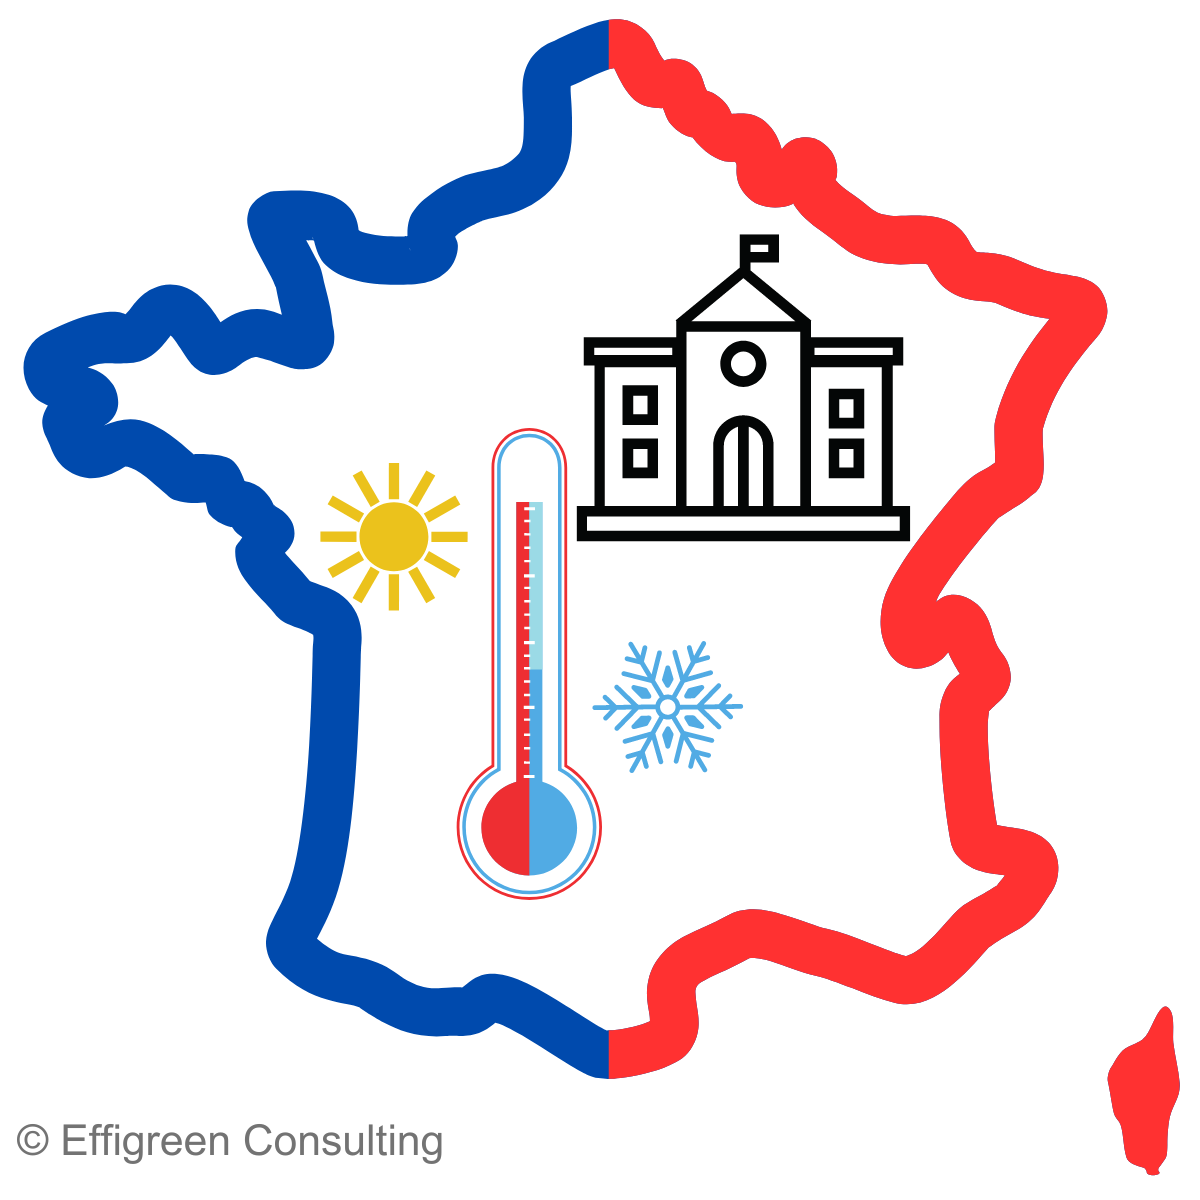 Elément graphique représentant la France avec, à l'intérieur, un thermomètre et un bâtiment public, illustrant les efforts de rénovation énergétique.